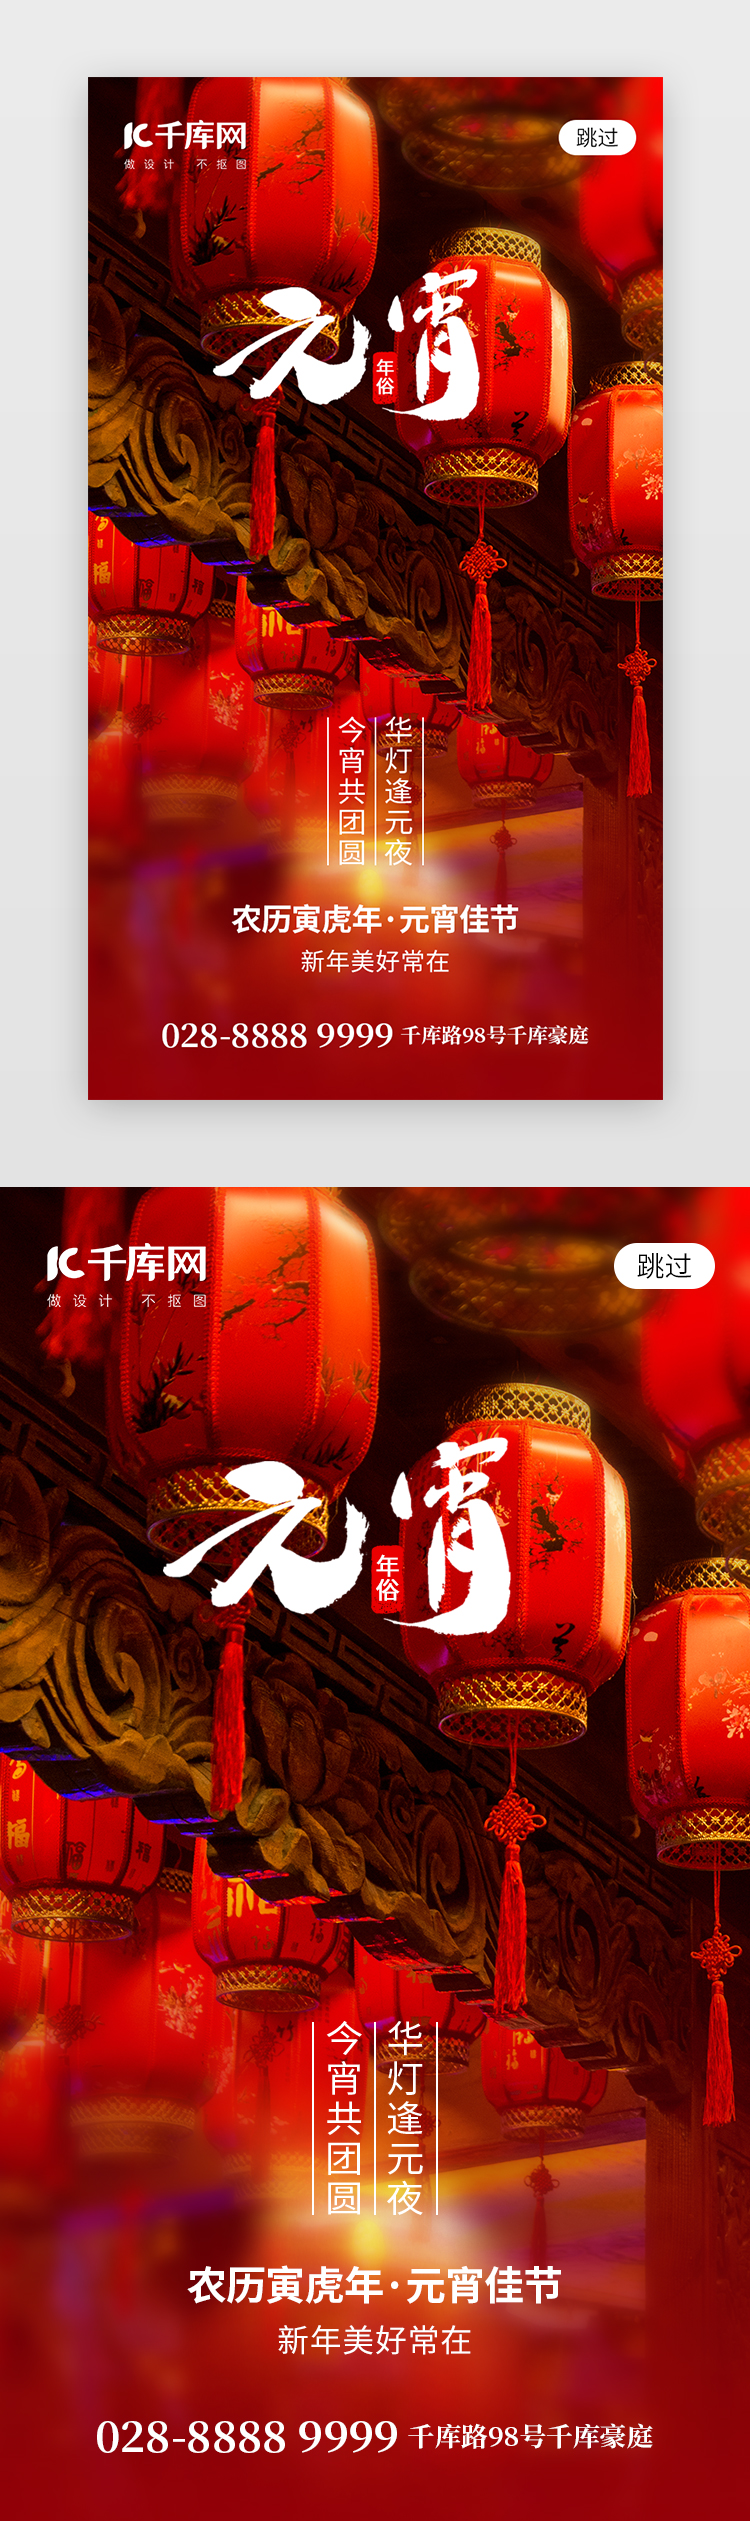 正月十五元宵节app闪屏摄影红色灯笼图片